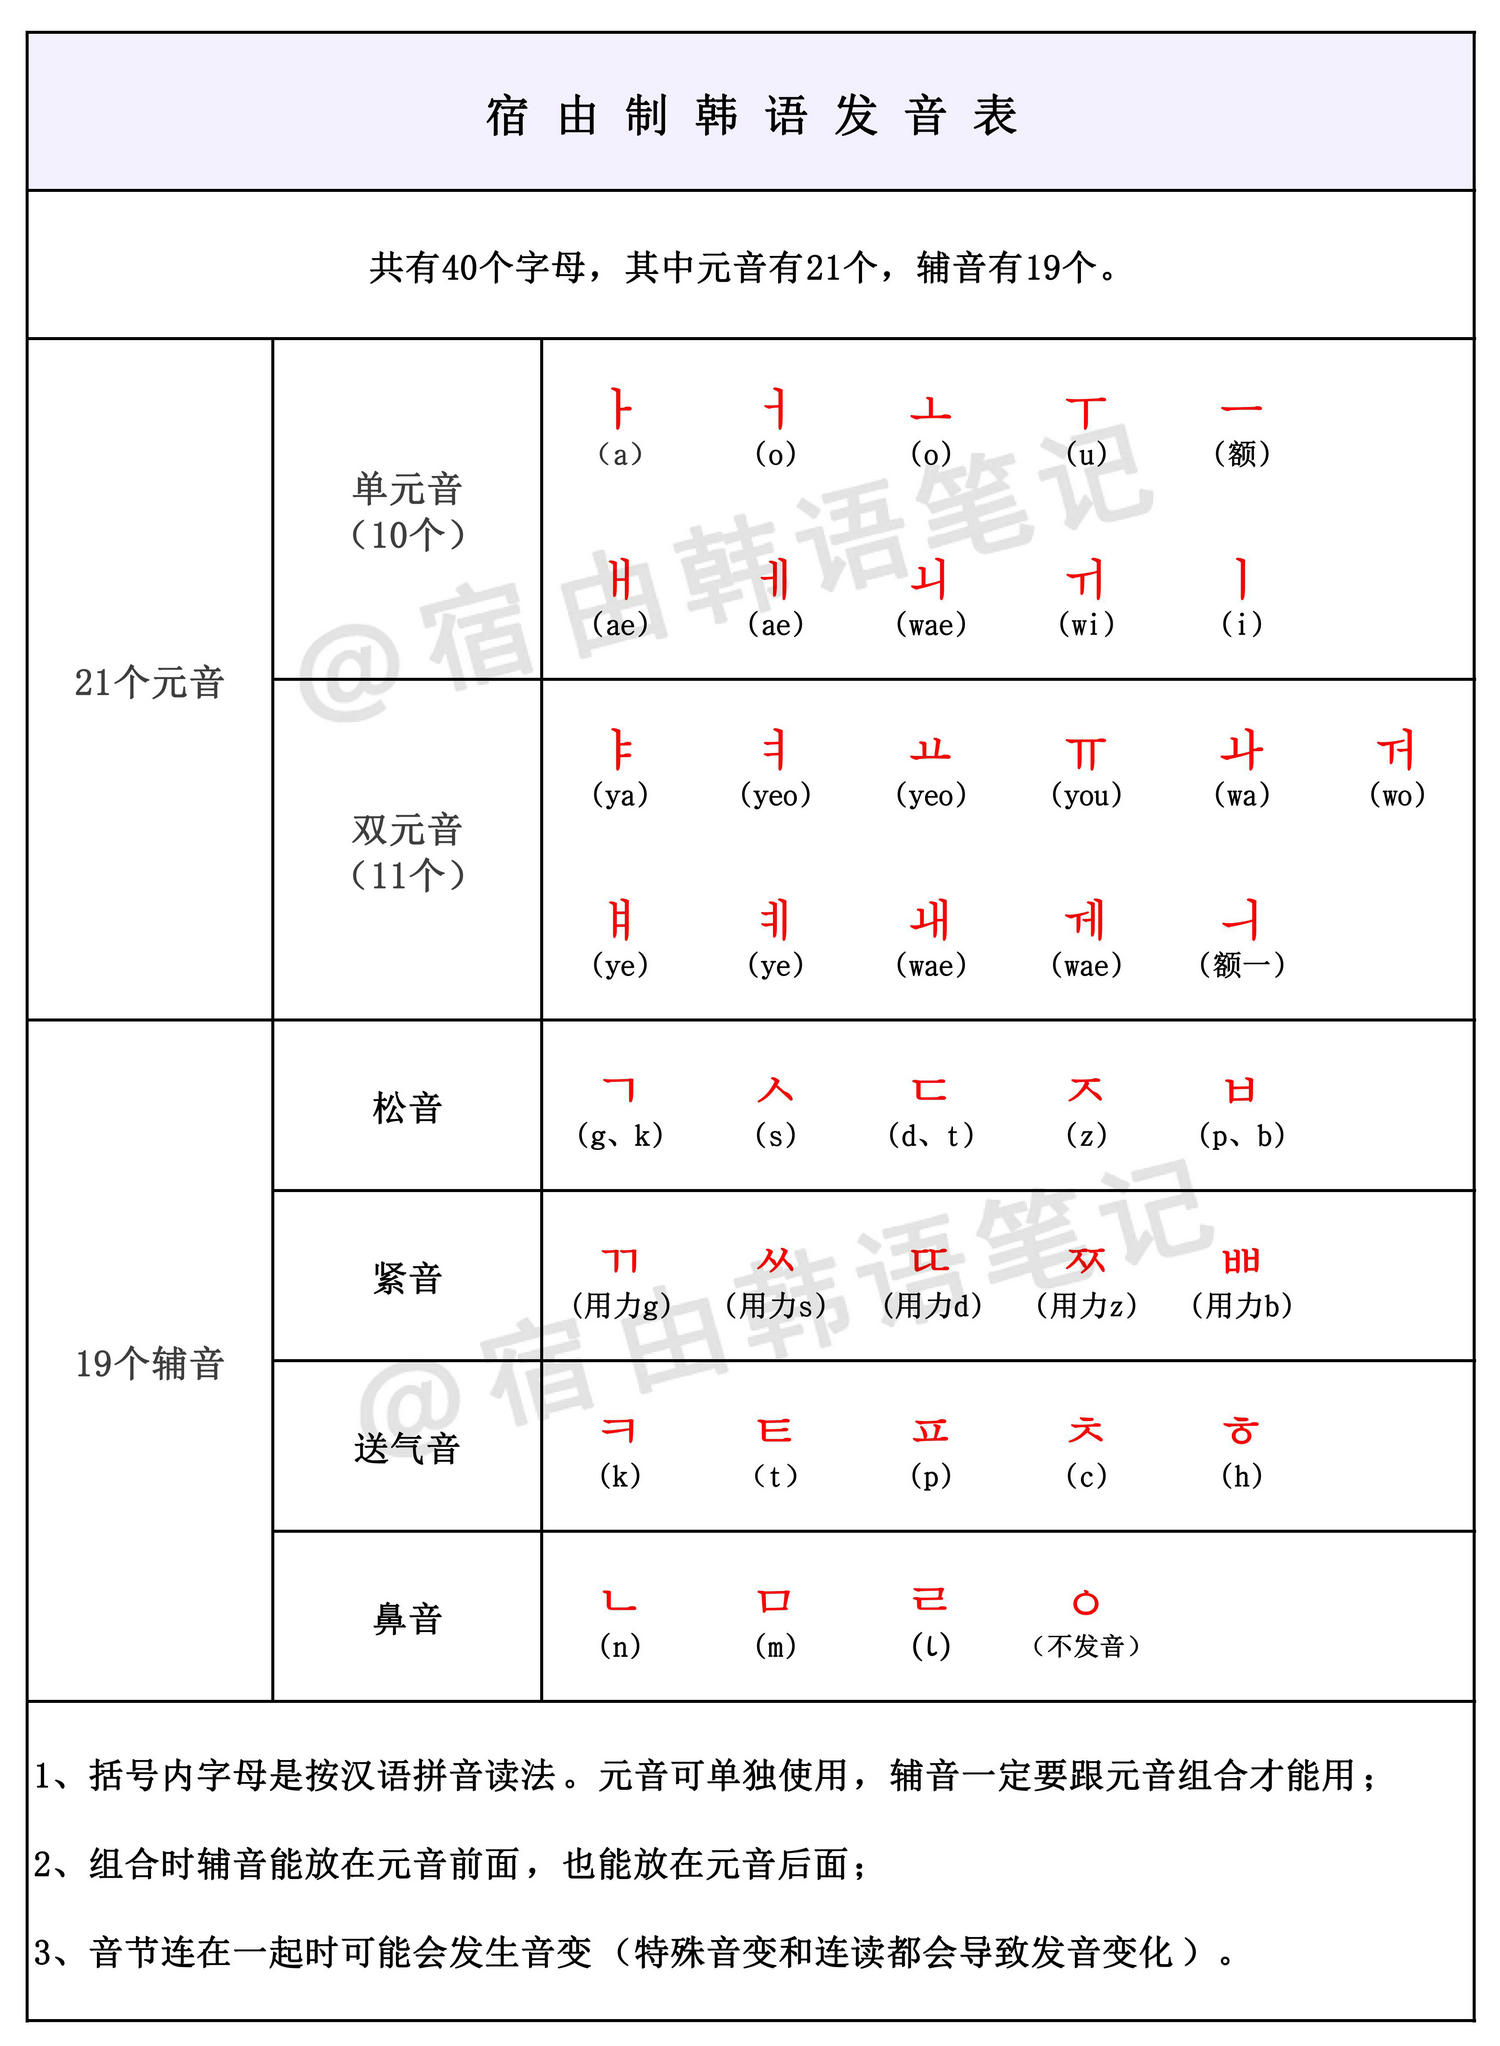 《超实用韩语自学入门指南》,3个阶段计划,打包发送